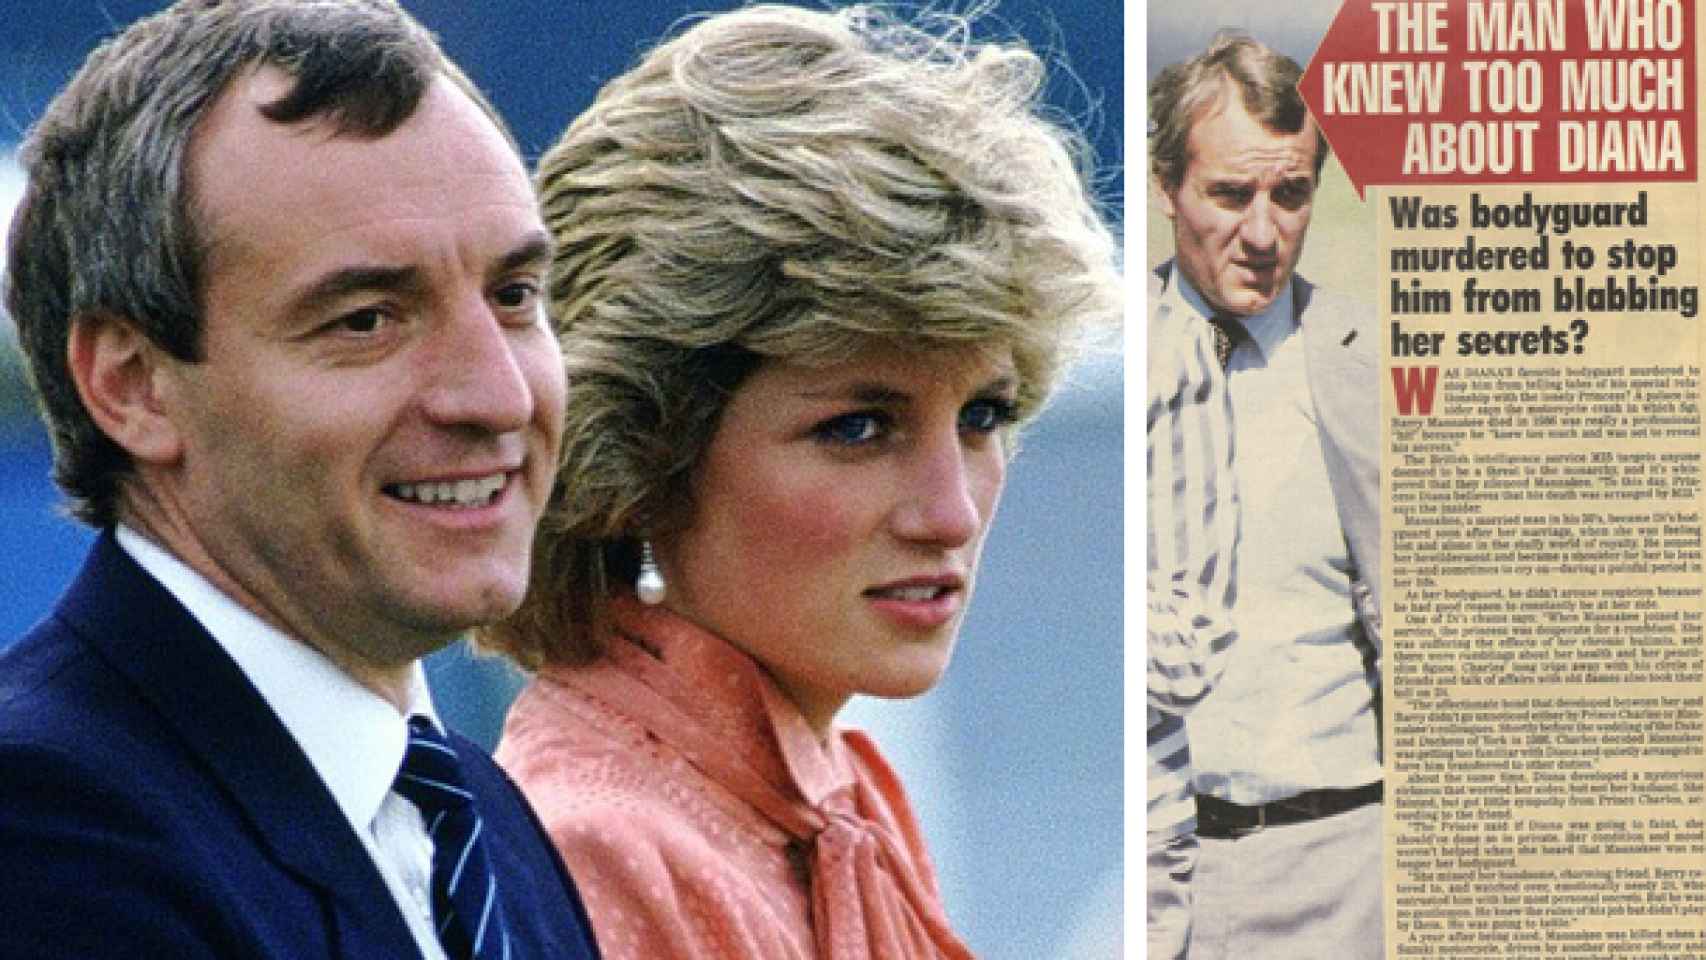 El accidente de Barry Mannakee acaparó portadas de prensa por su relación clandestina con Diana.